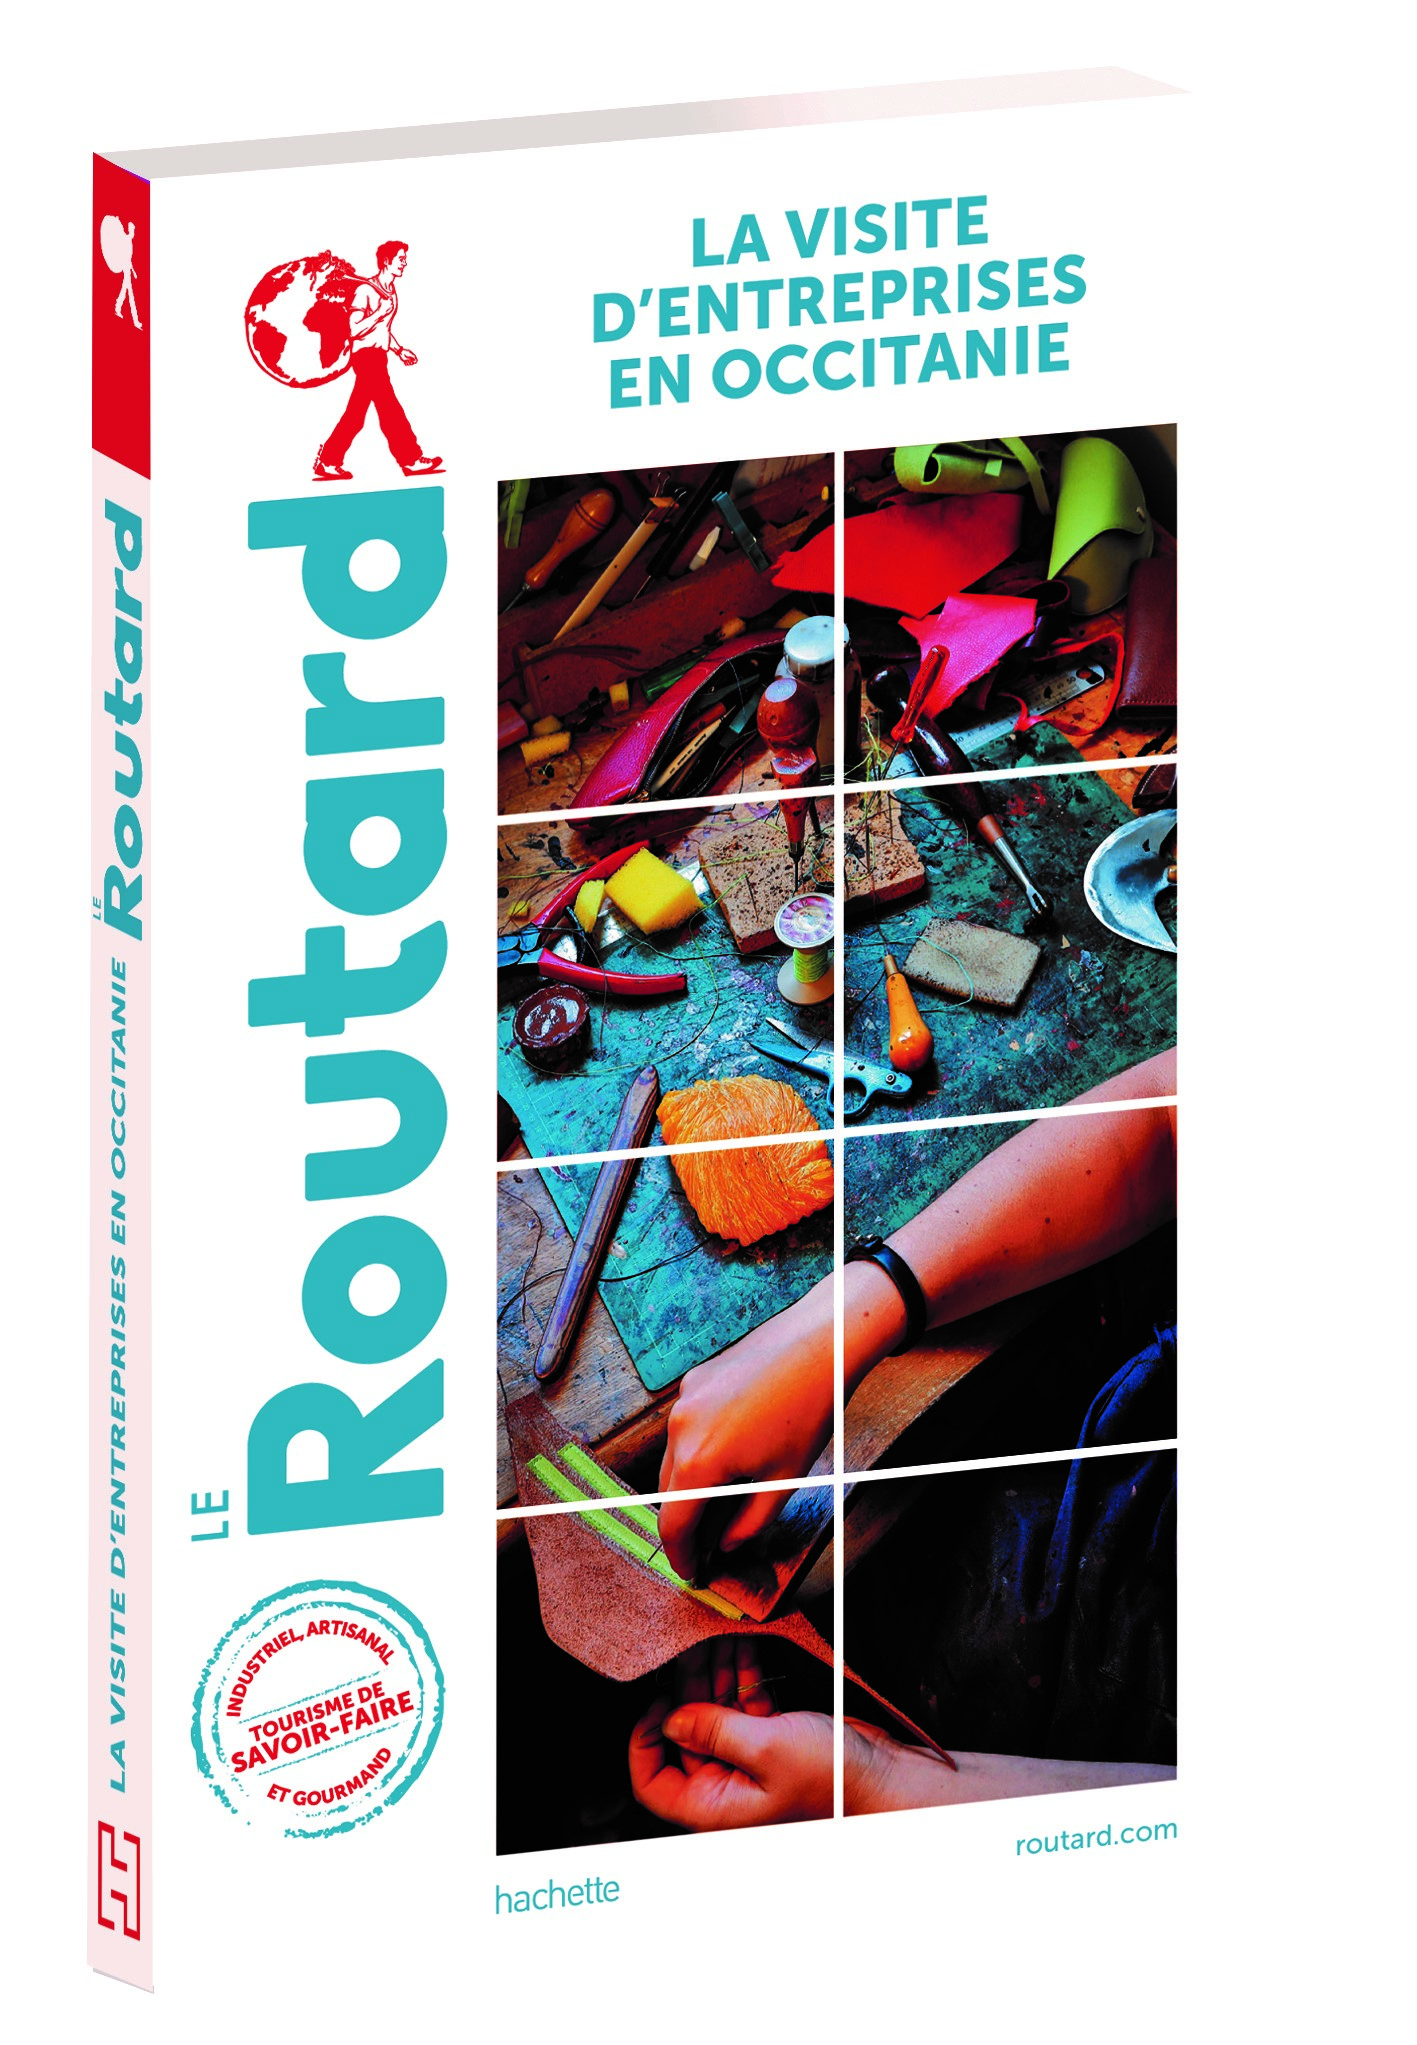 Ce Guide du Routard éco est disponible en librairie depuis le 7 juin 2023. (Photo : Guide du Routard)